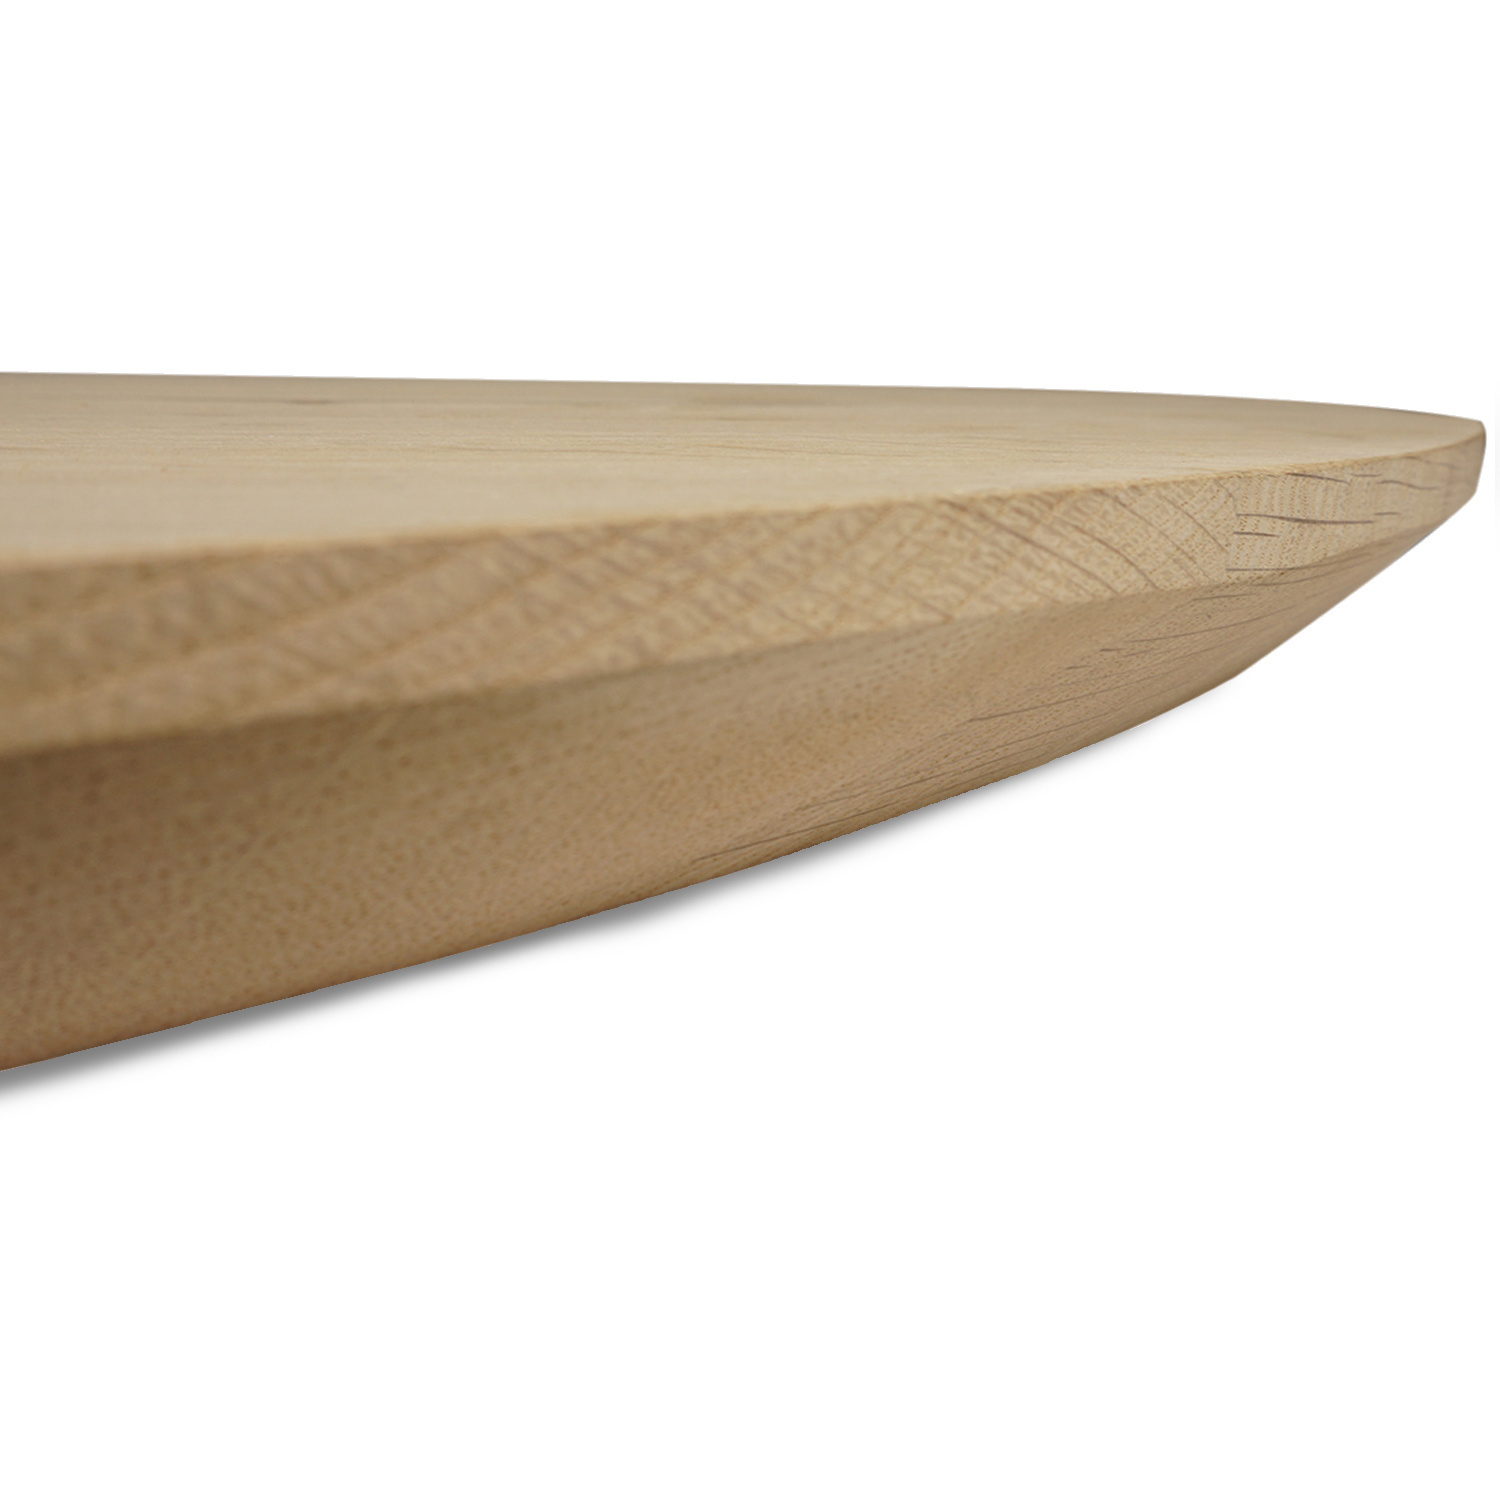  Tischplatte Eiche rund - 4 cm dick (1-Schicht) - Breite Lamellen (10 - 12 cm breit) - Eichenholz A-Qualität - verleimt & künstlich getrocknet (HF 8-12%) - verschiedene Größen